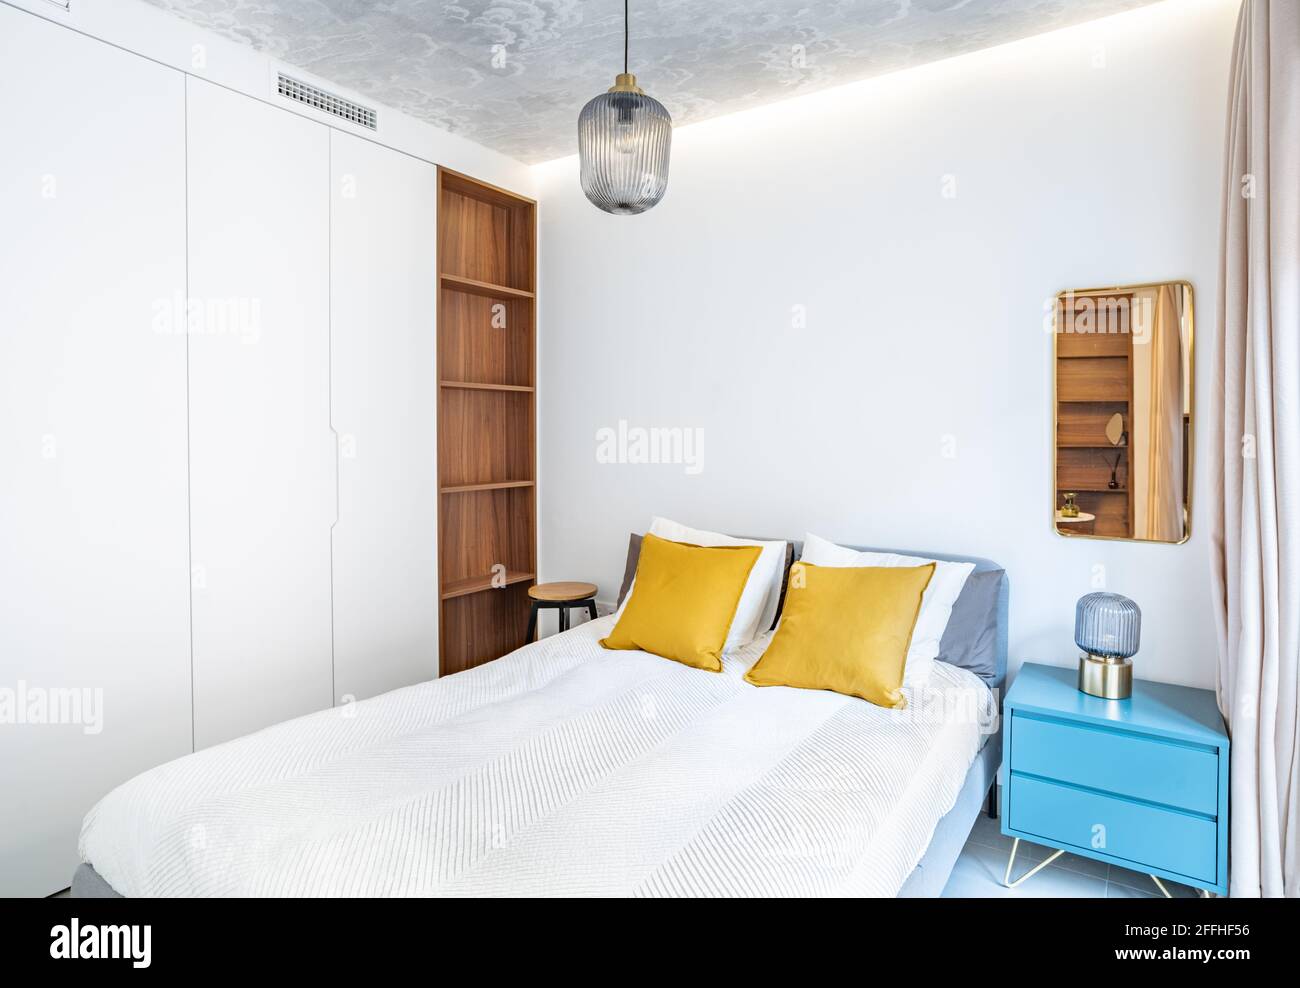 Sauberes, helles Schlafzimmer mit Bett, Bettdecke, Beistelltisch, Lampen, Vorhang, Metallspiegel, LED-indirektes Licht und bemalter Tapete an der Decke. Minimalistischer Weißkauch Stockfoto